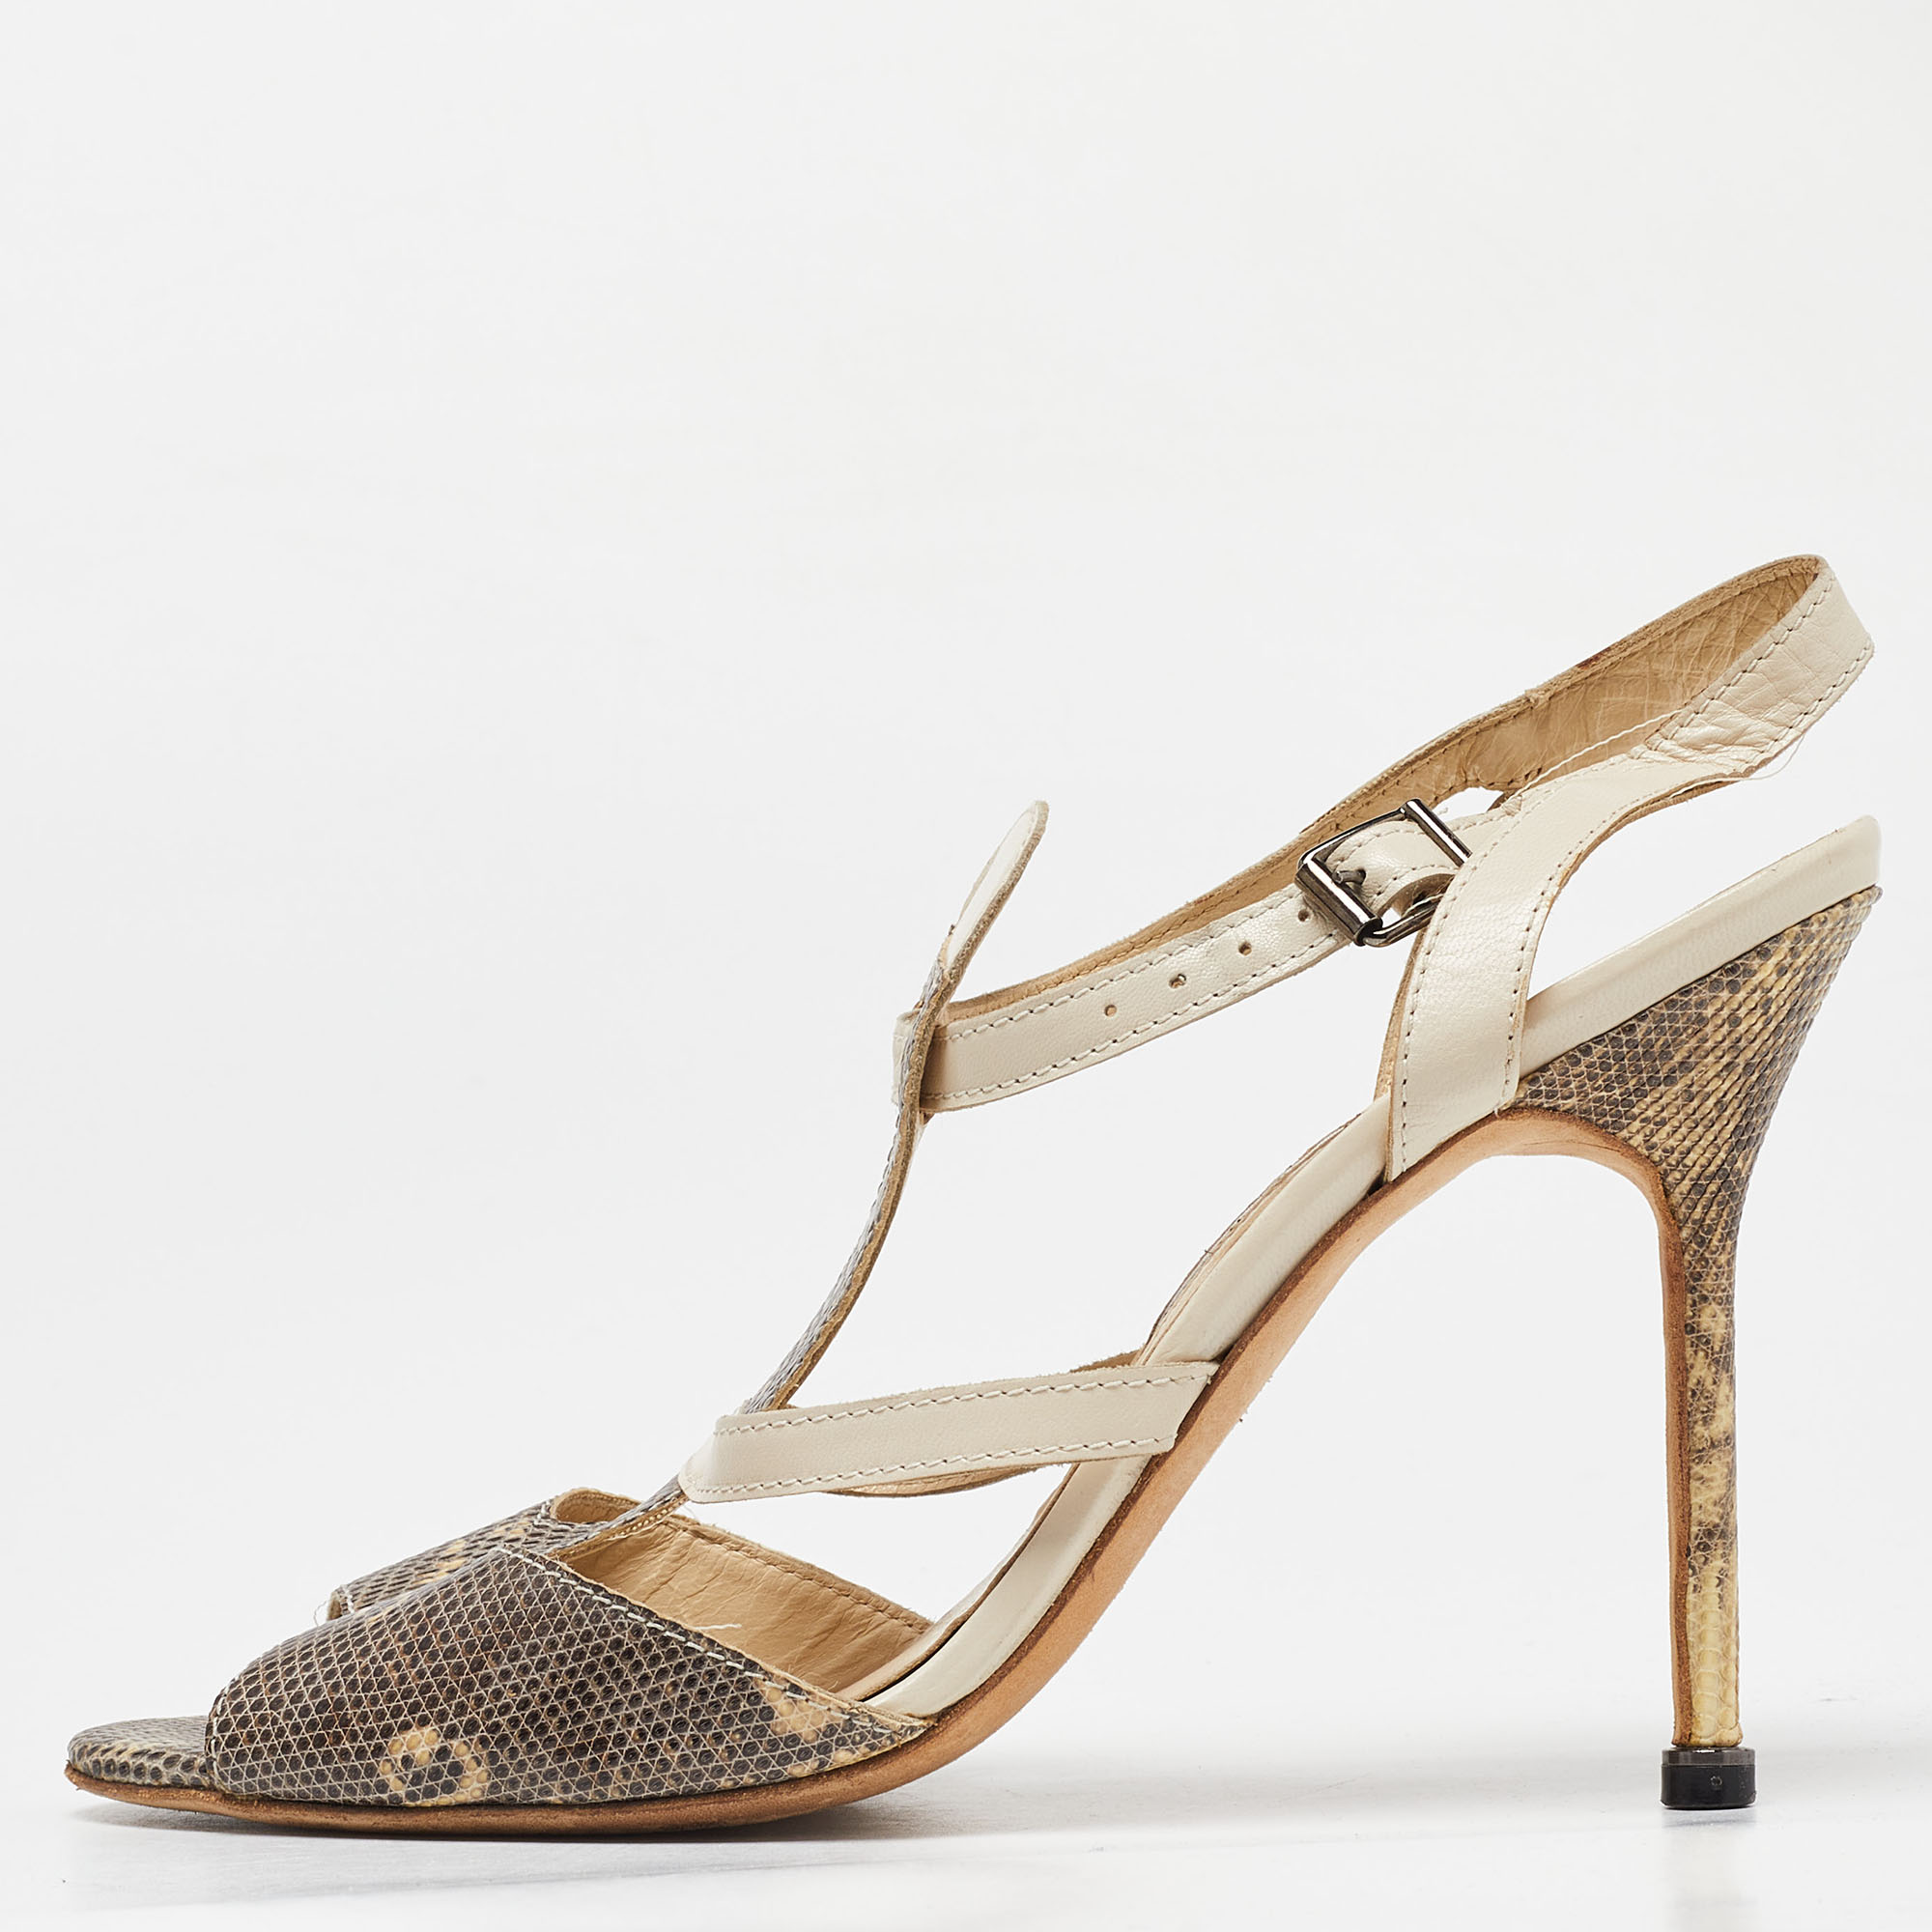 Manolo blahnik beige lizard leather open toe strappy sandals size 40